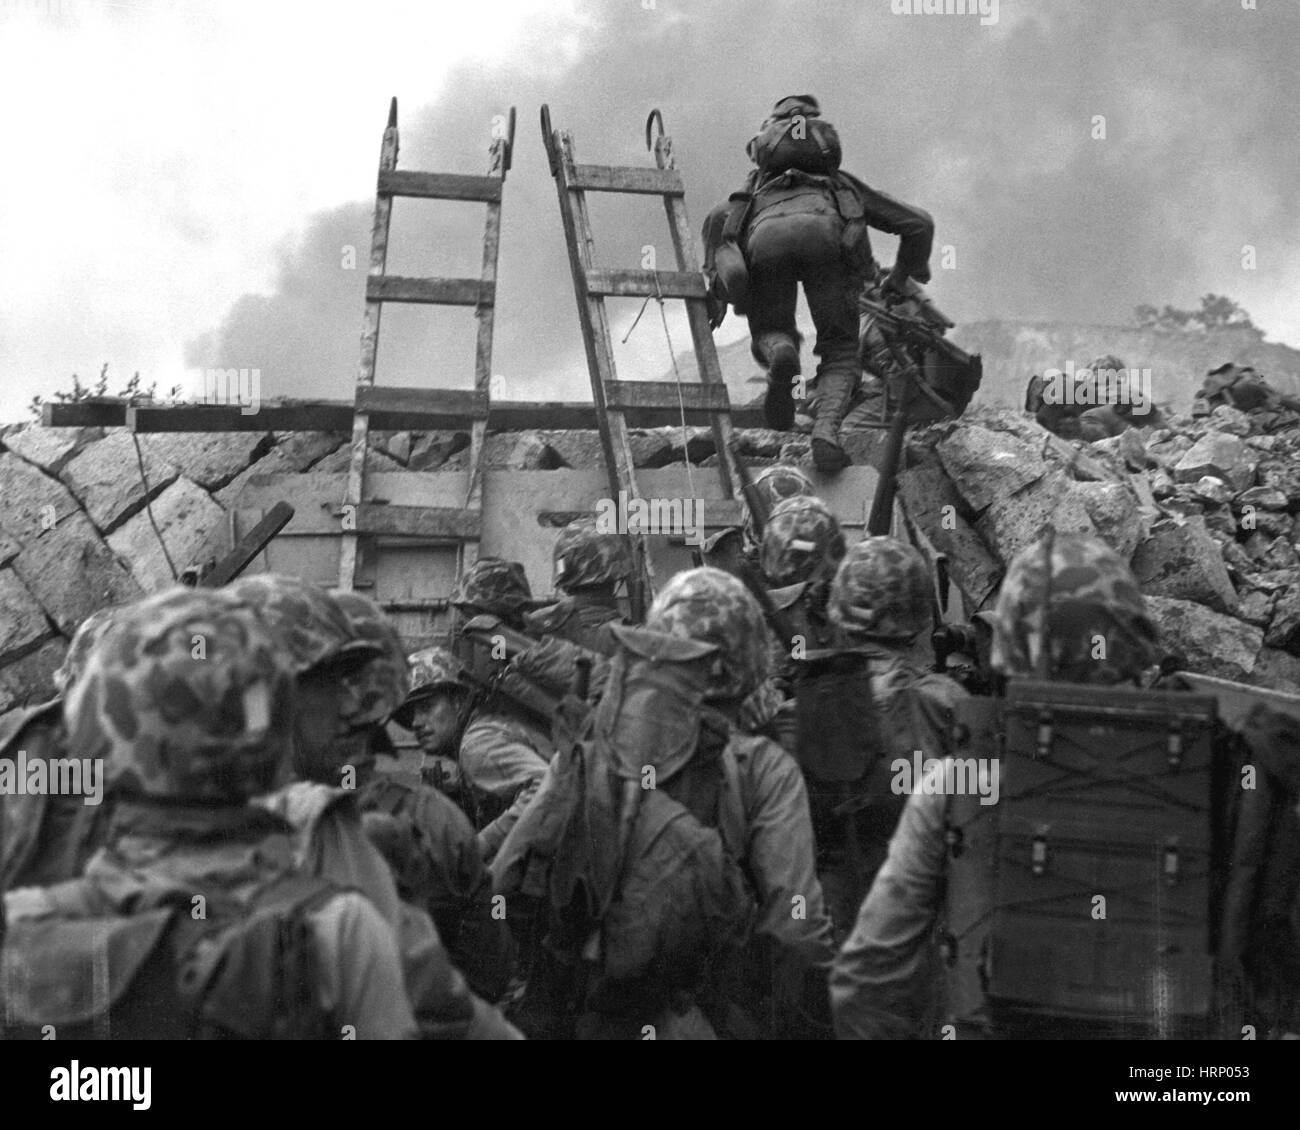 La guerre de Corée, la bataille d'Inchon, 1950 Banque D'Images